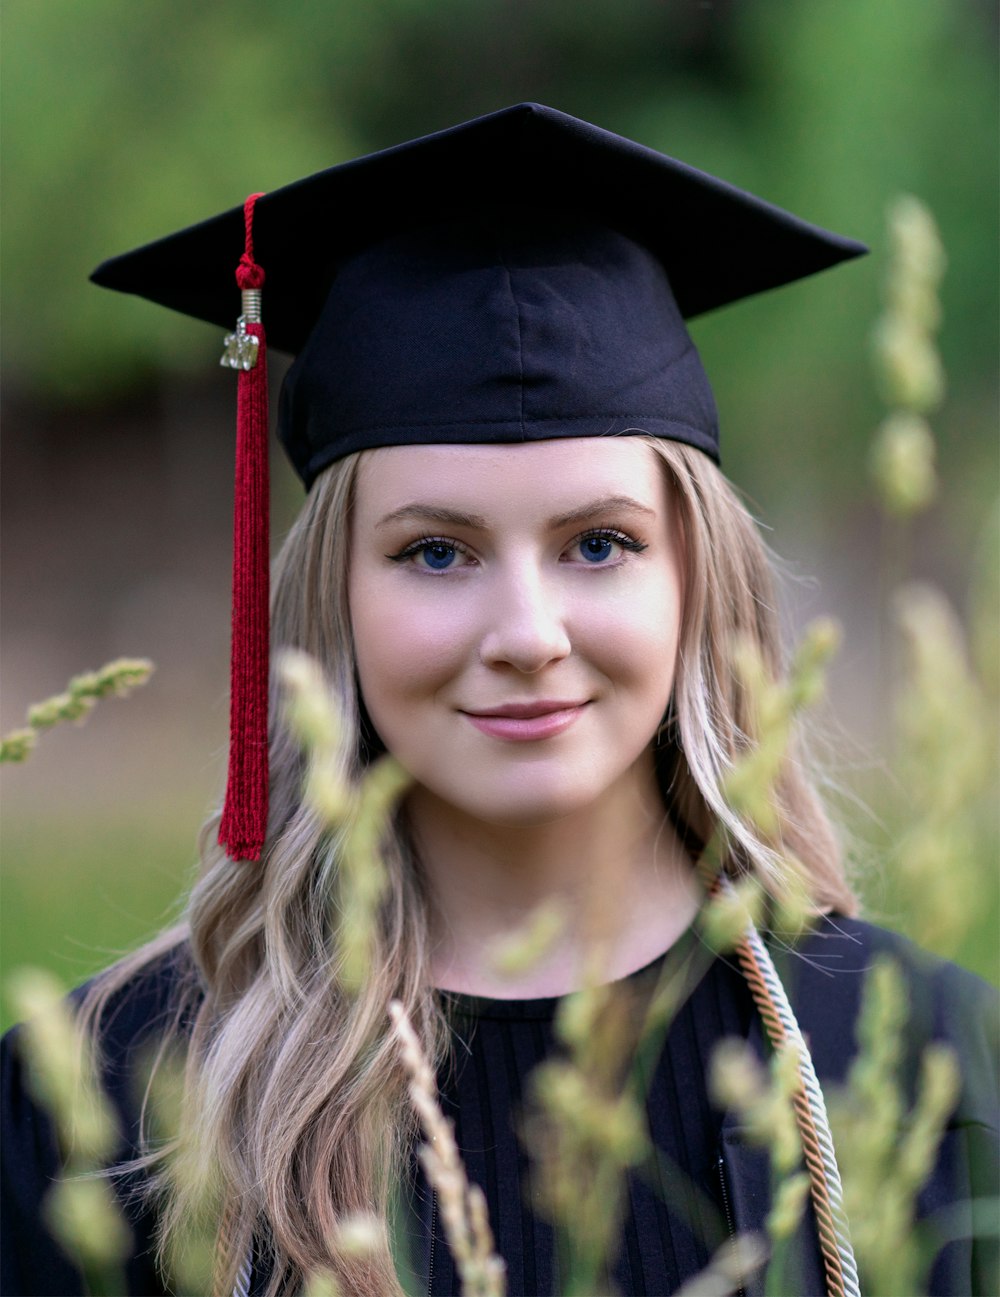 Imágenes de Chica De Graduación | imágenes gratuitas en Unsplash